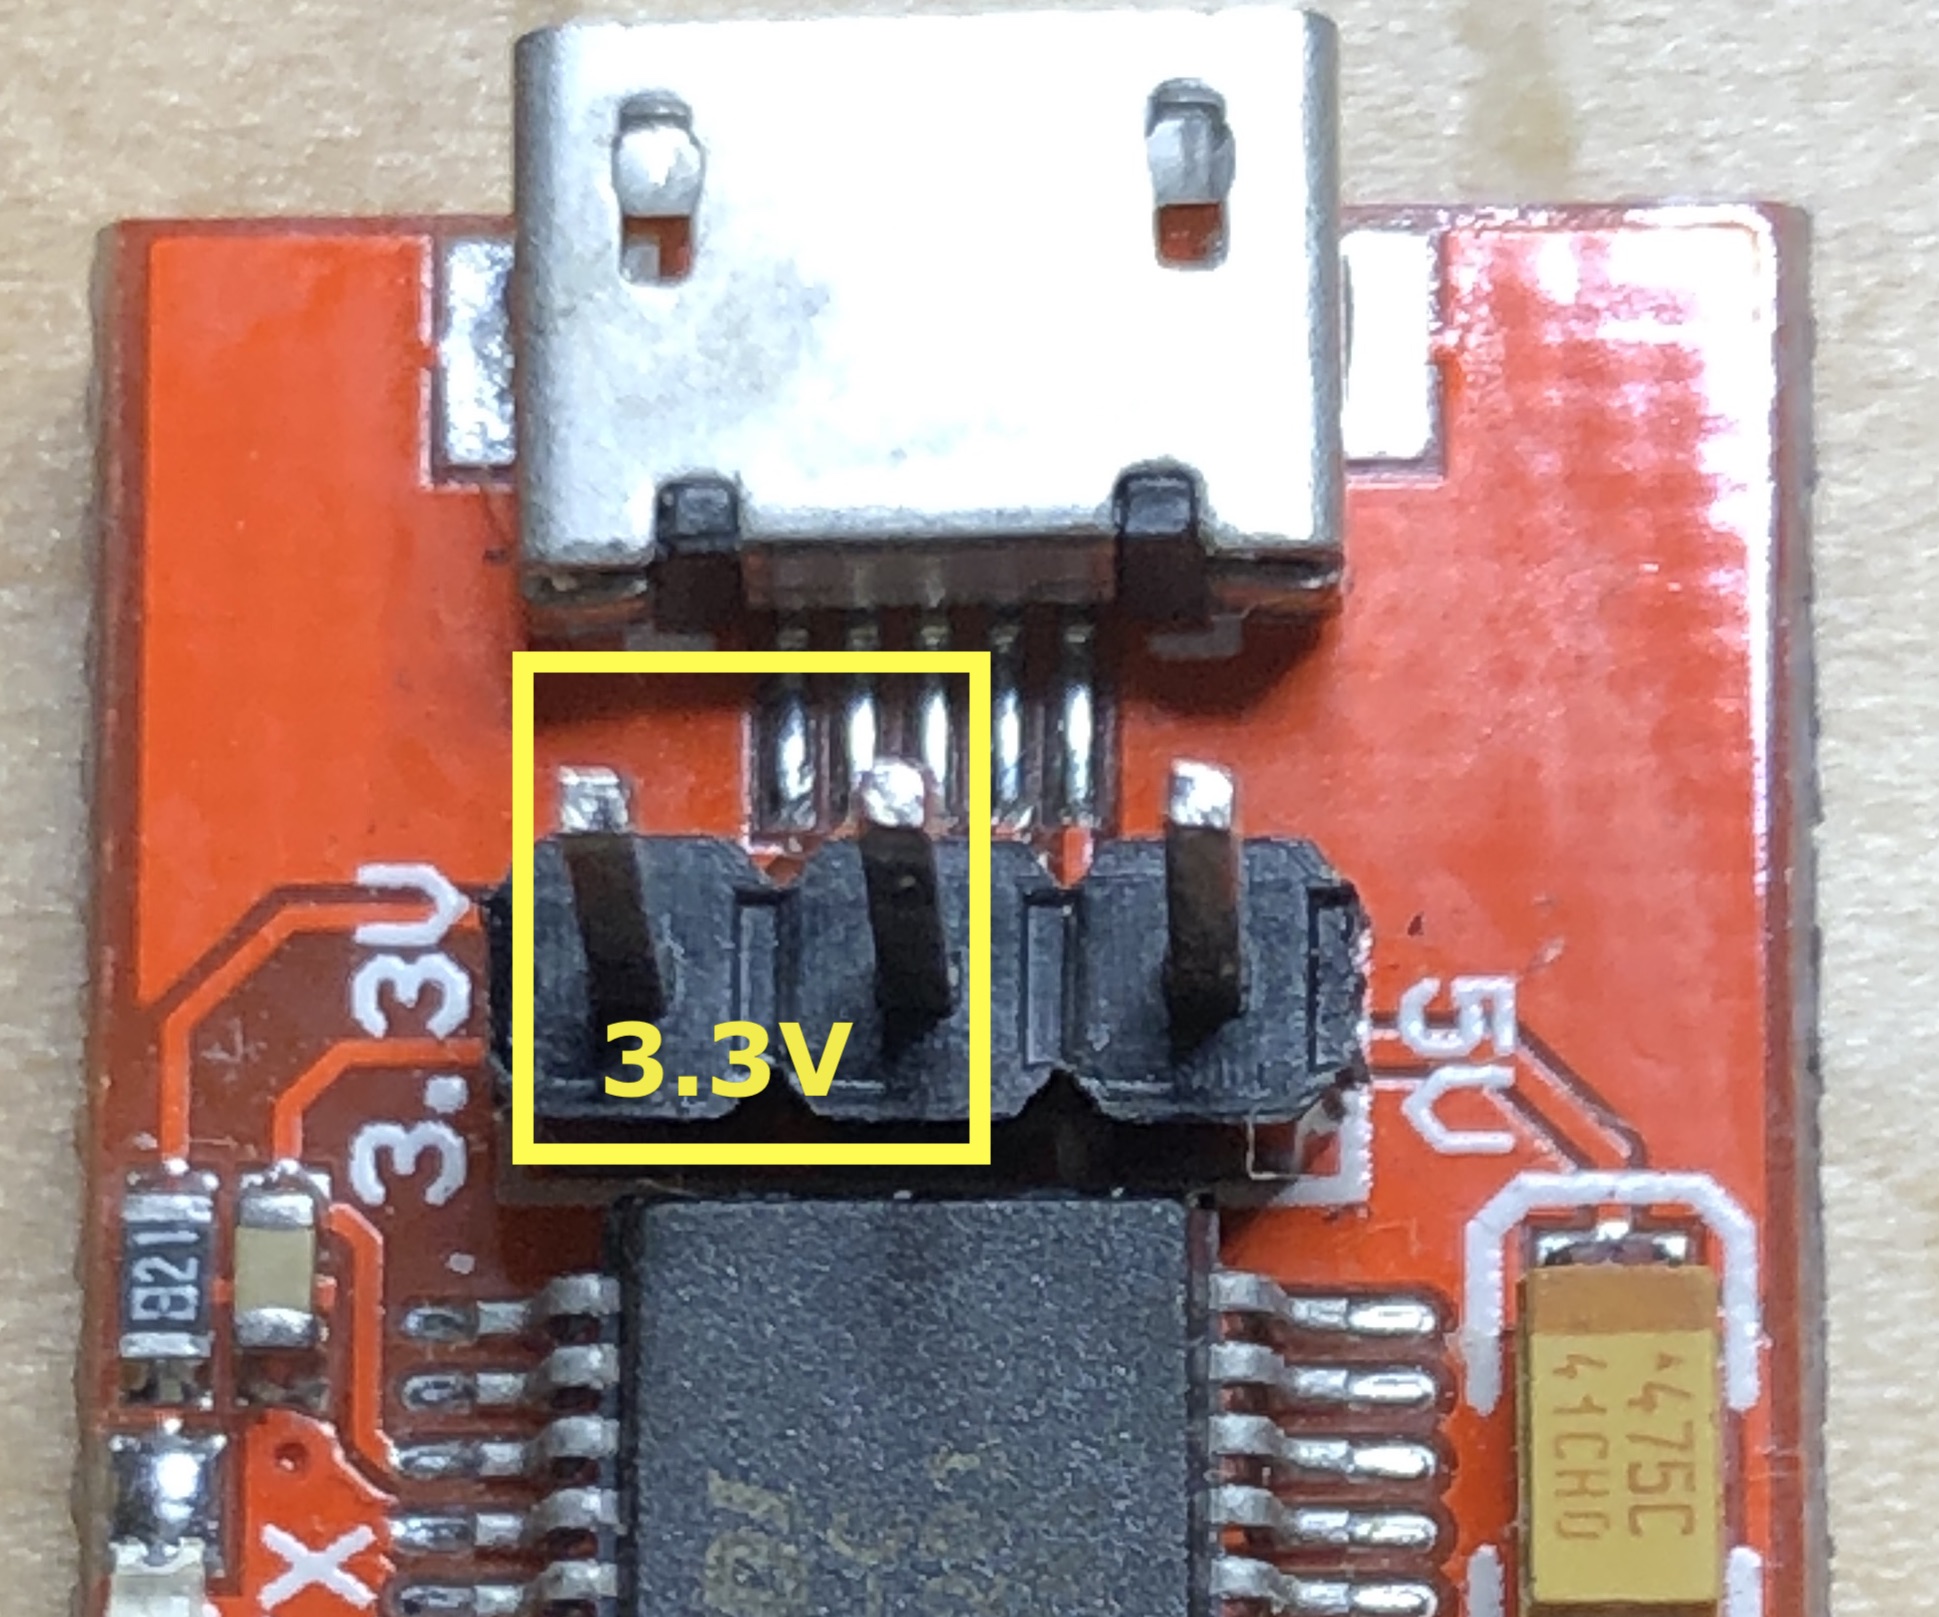 FTDI pin combination for 3.3V